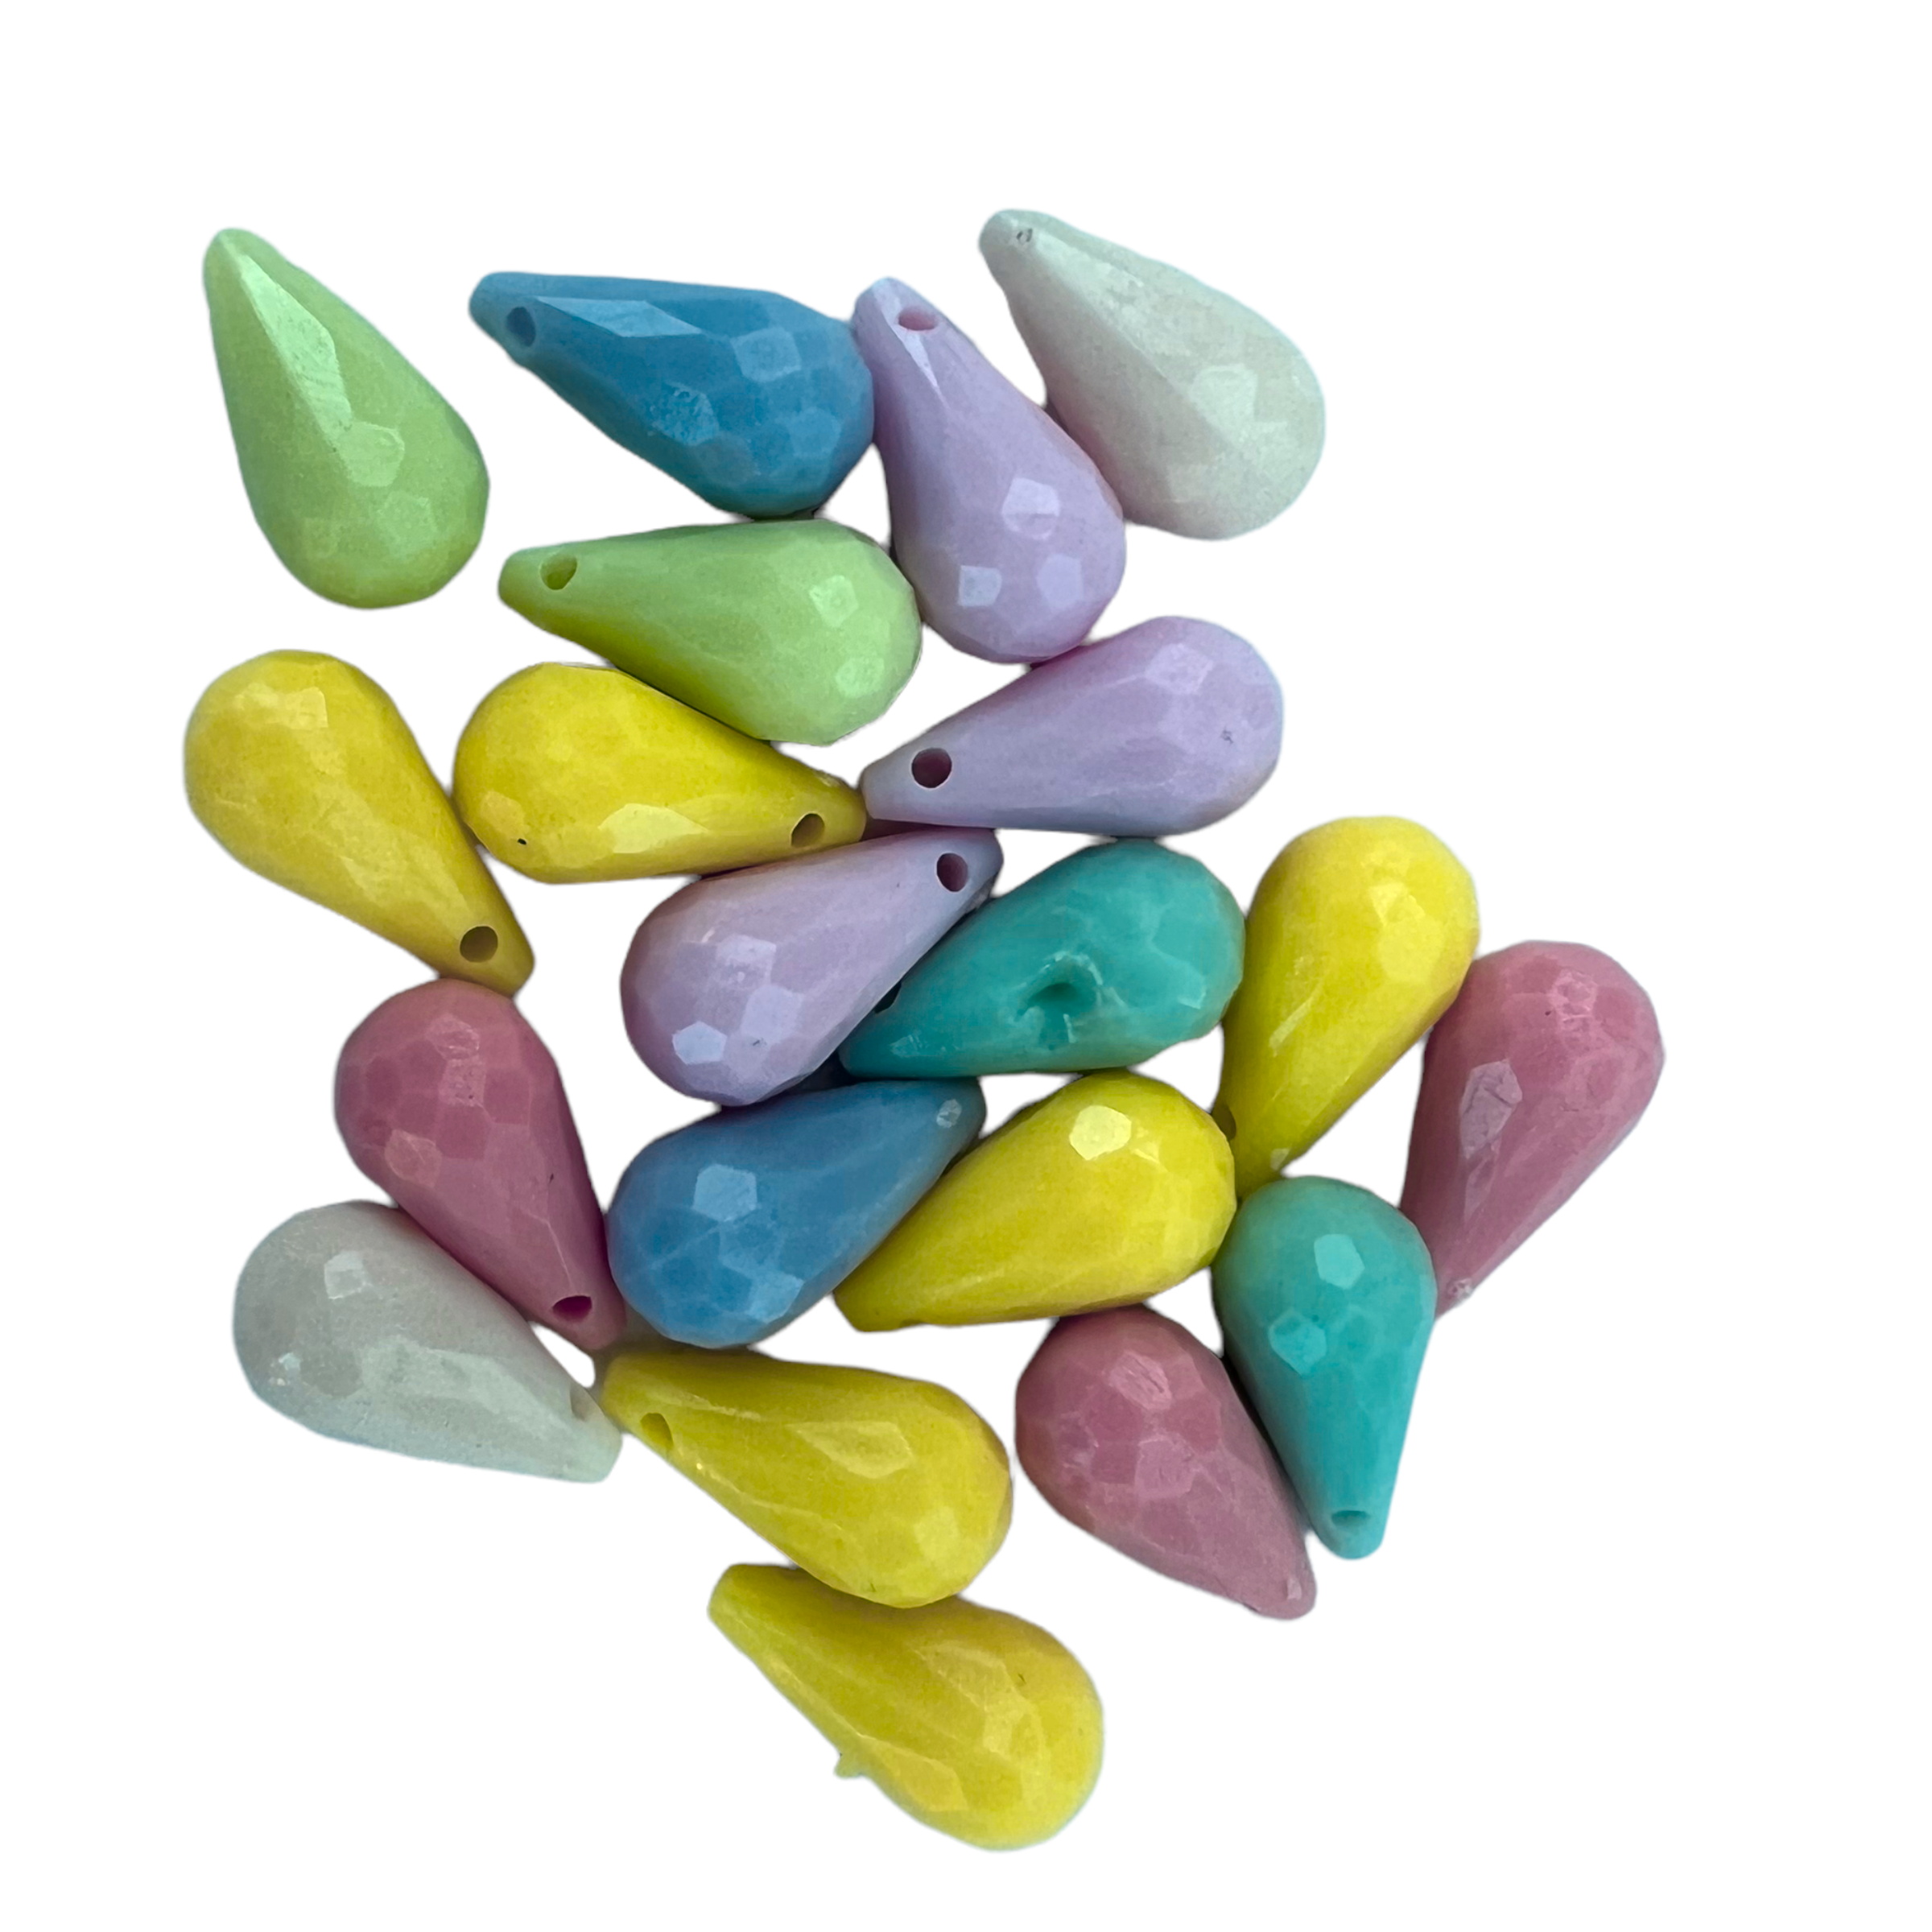 20db színes csepp műanyag gyöngy (13x8mm)